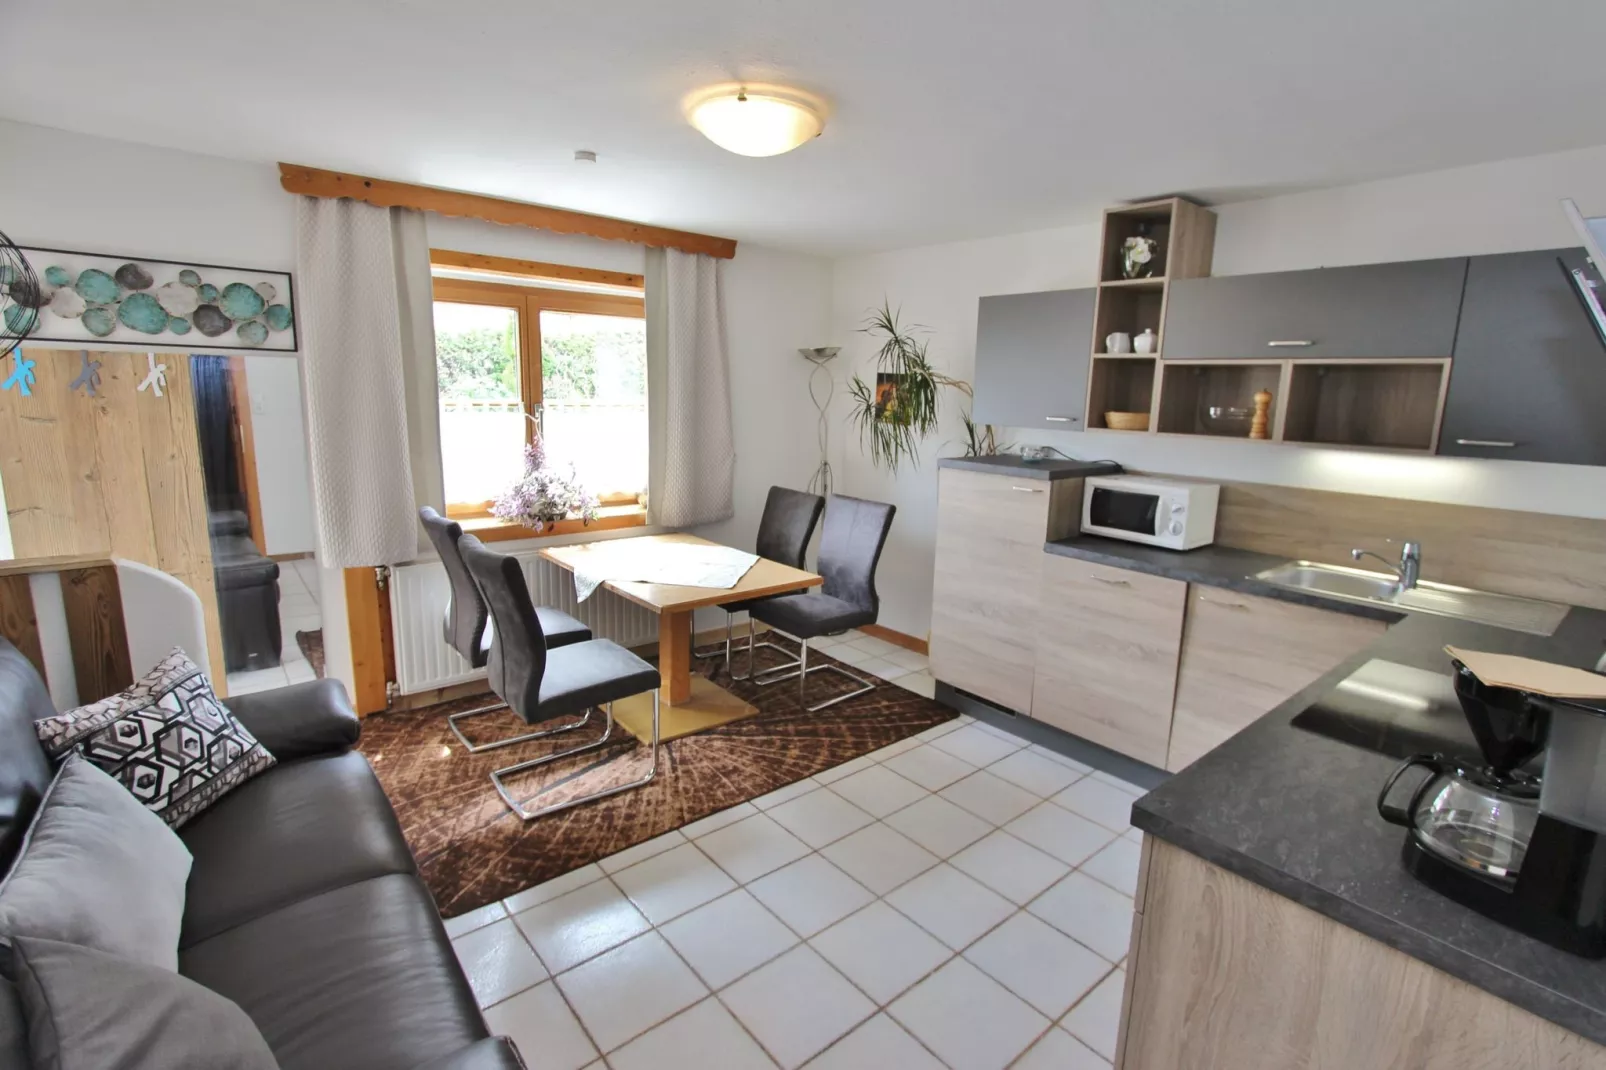 Compact appartement in Walchen met zonnig terras